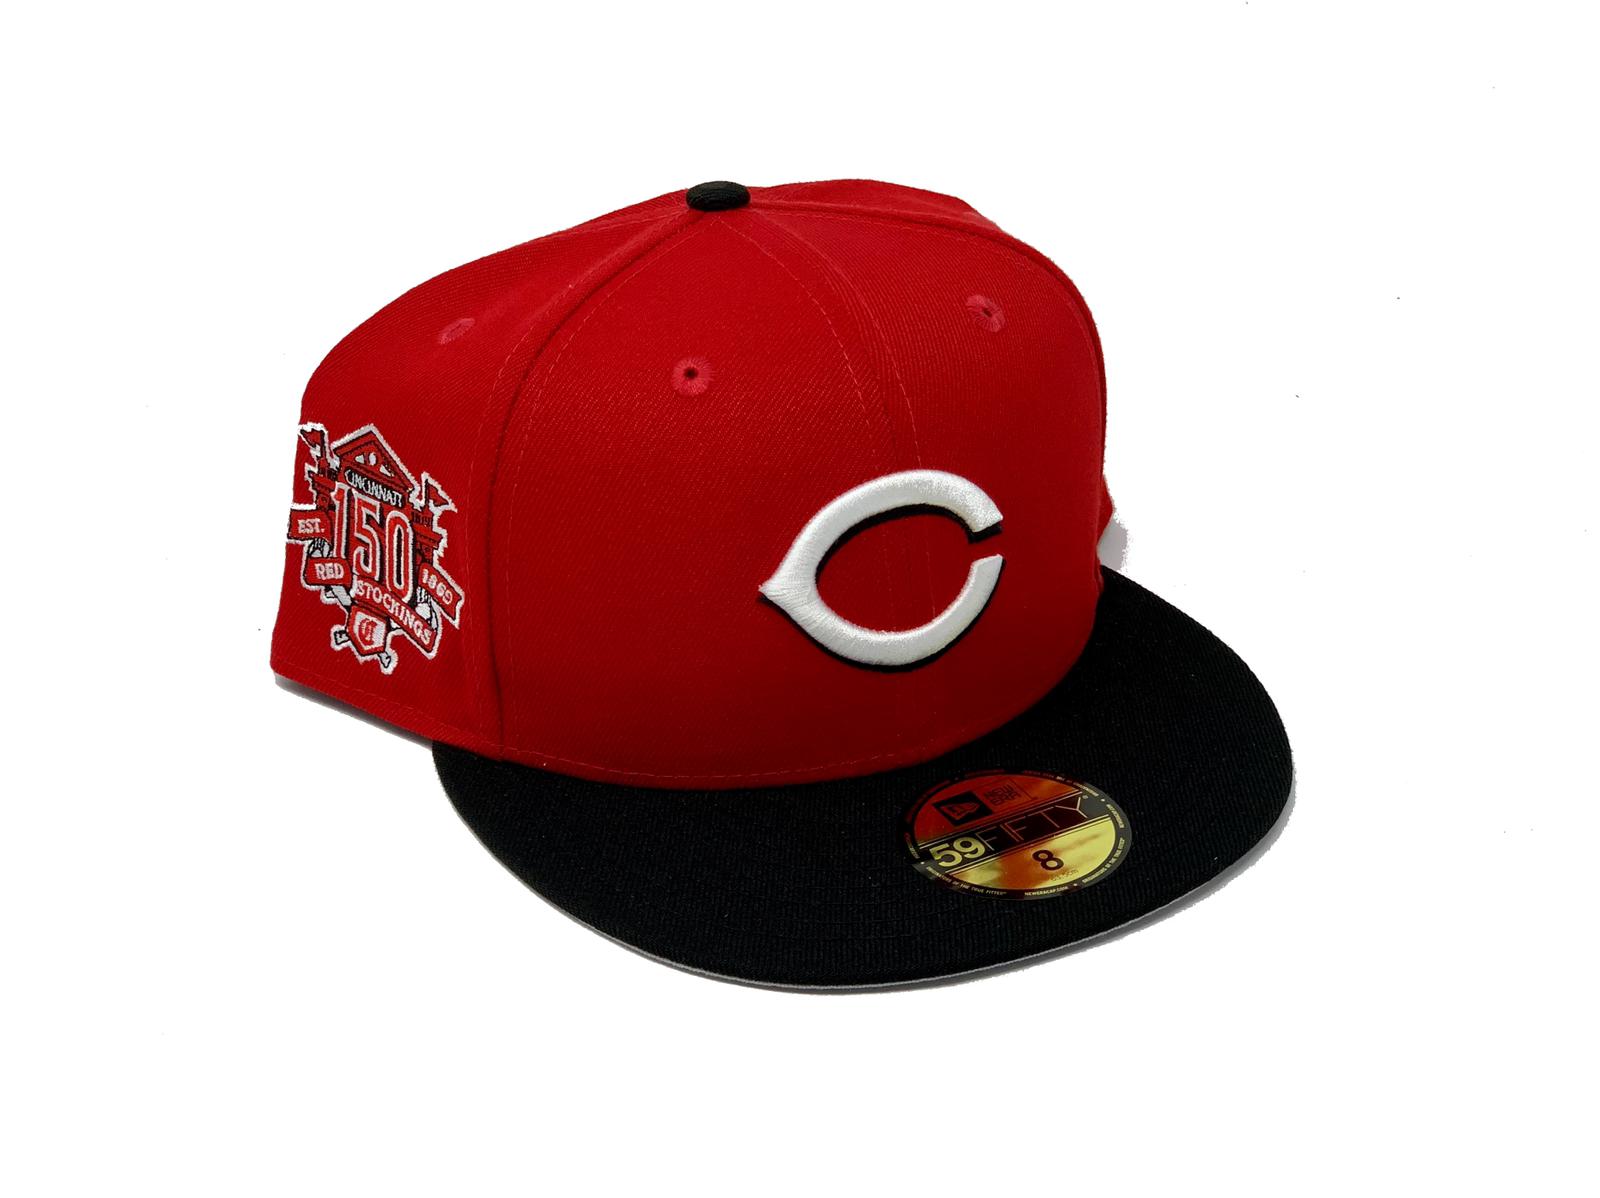 New Era “Pinstripe” Cincinnati Reds Fitted Hat